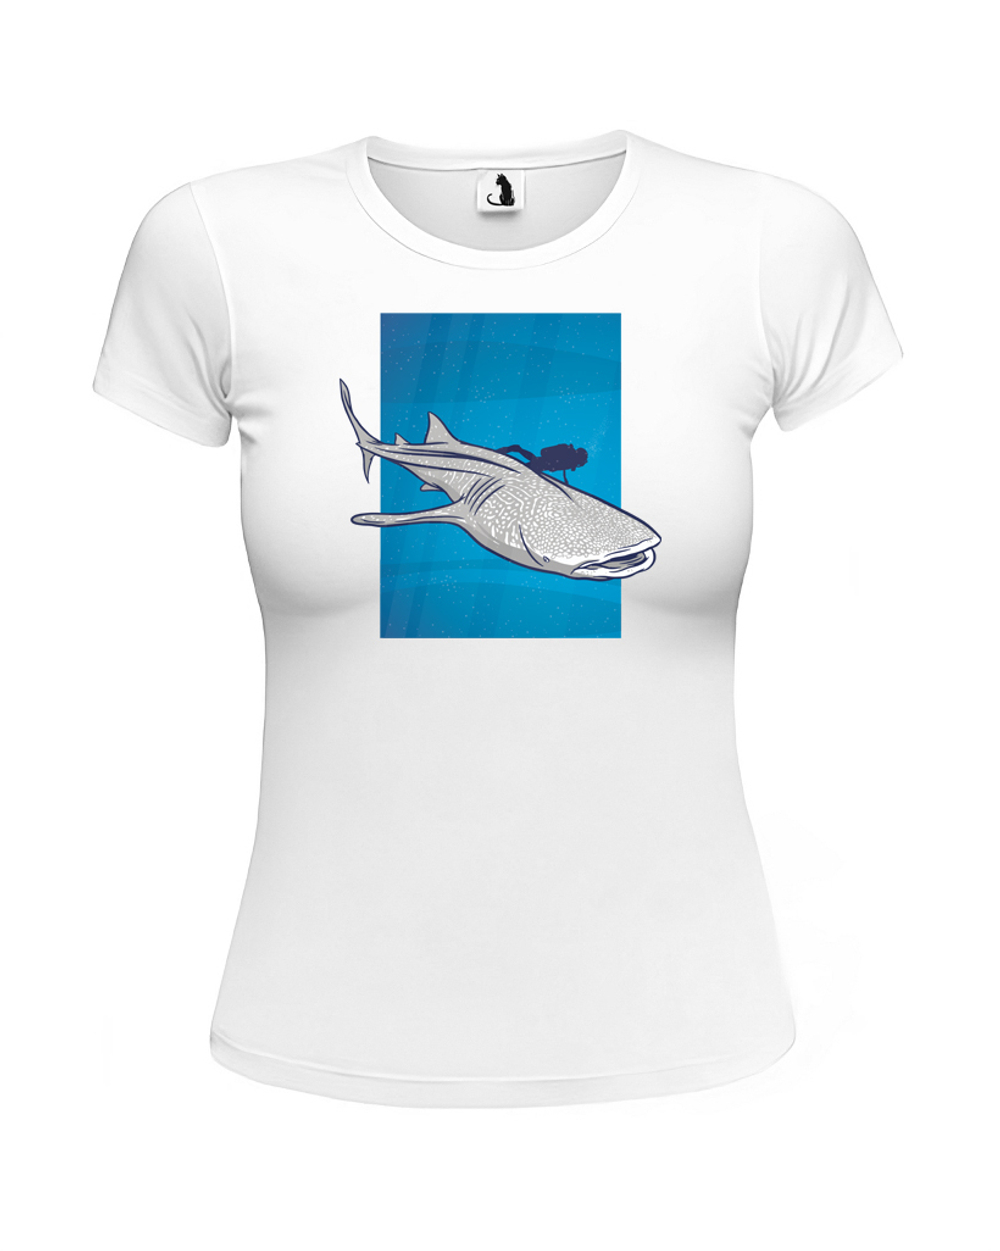 Футболка Китовая акула женская белая